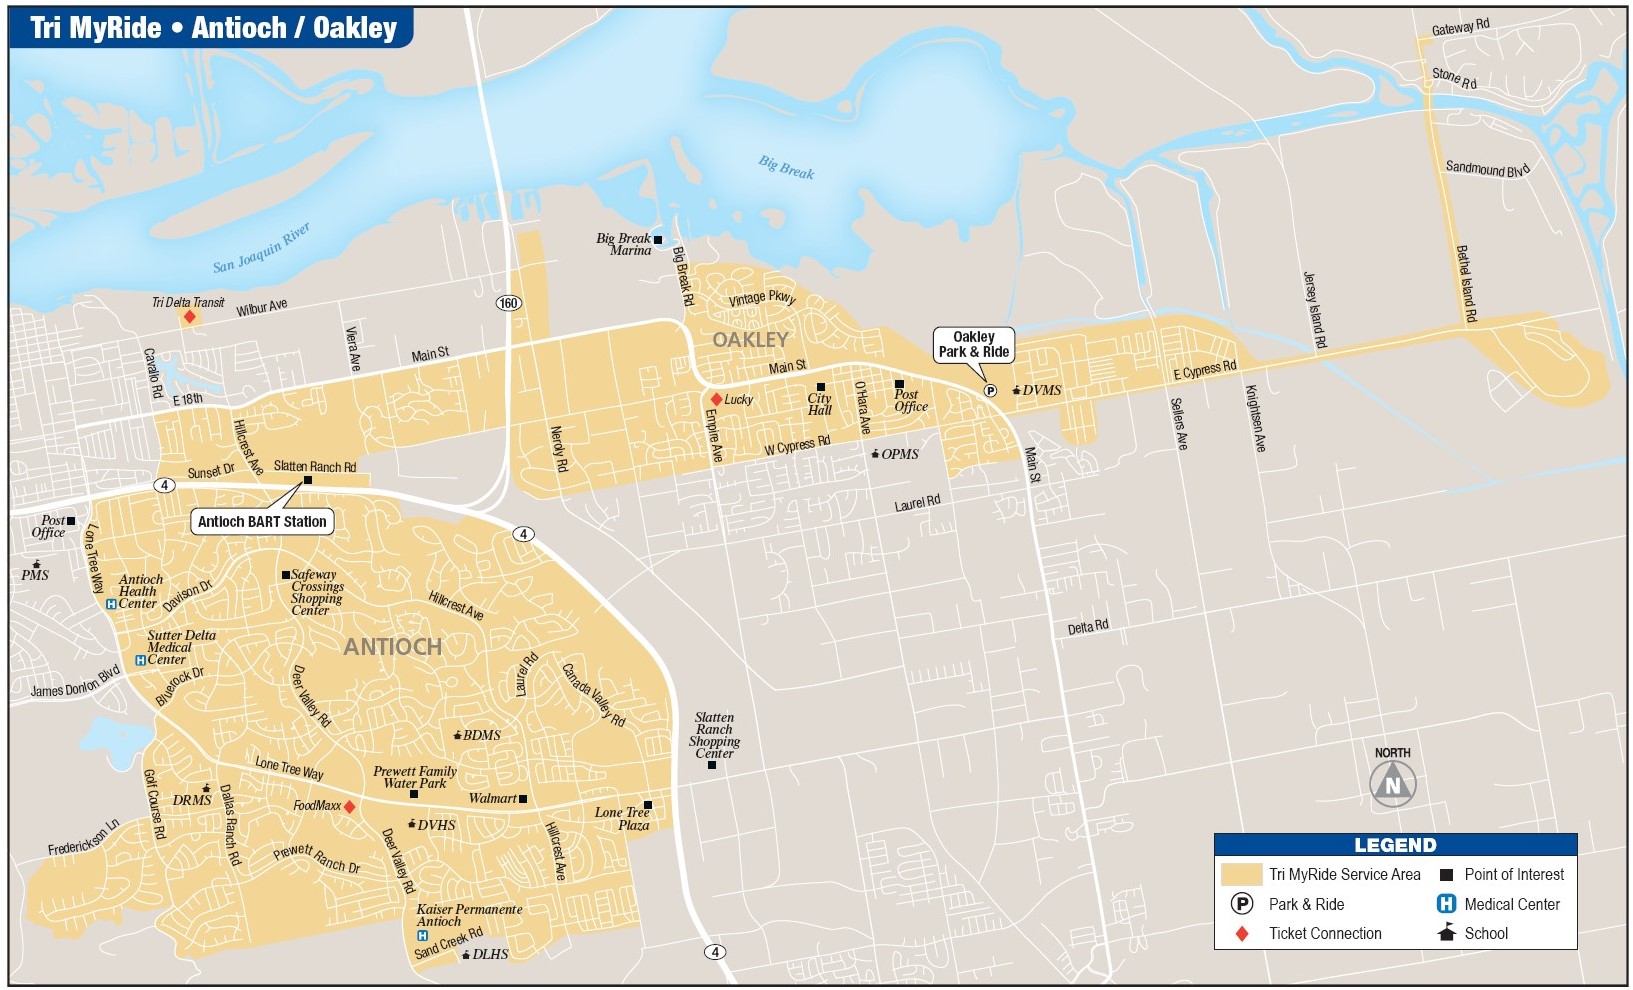 Antioch/Oakley Service area map.